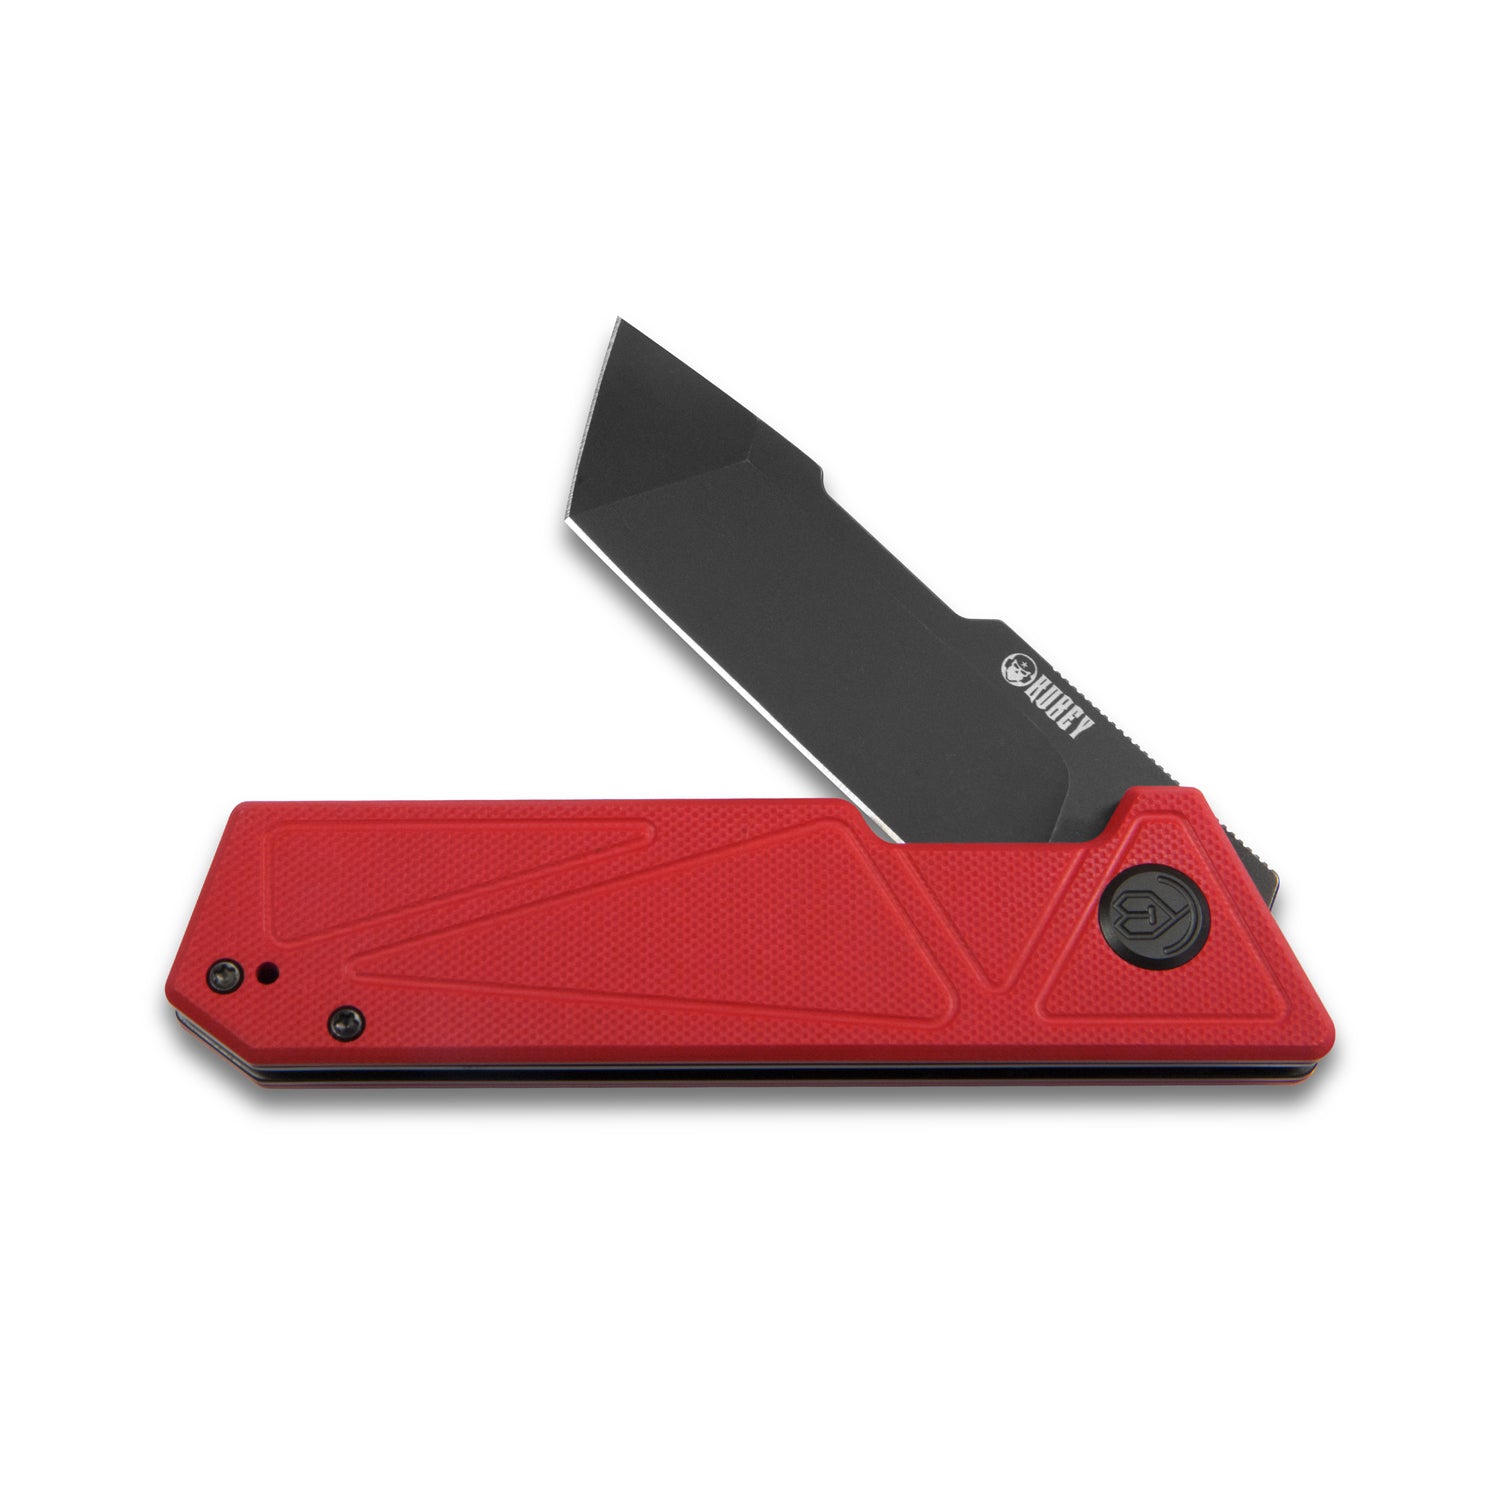 Kubey Avenger Outdoor Edc Folding Pocket Knife Red G10 Handle 3.07" Dark Stonewashed D2 KU104D